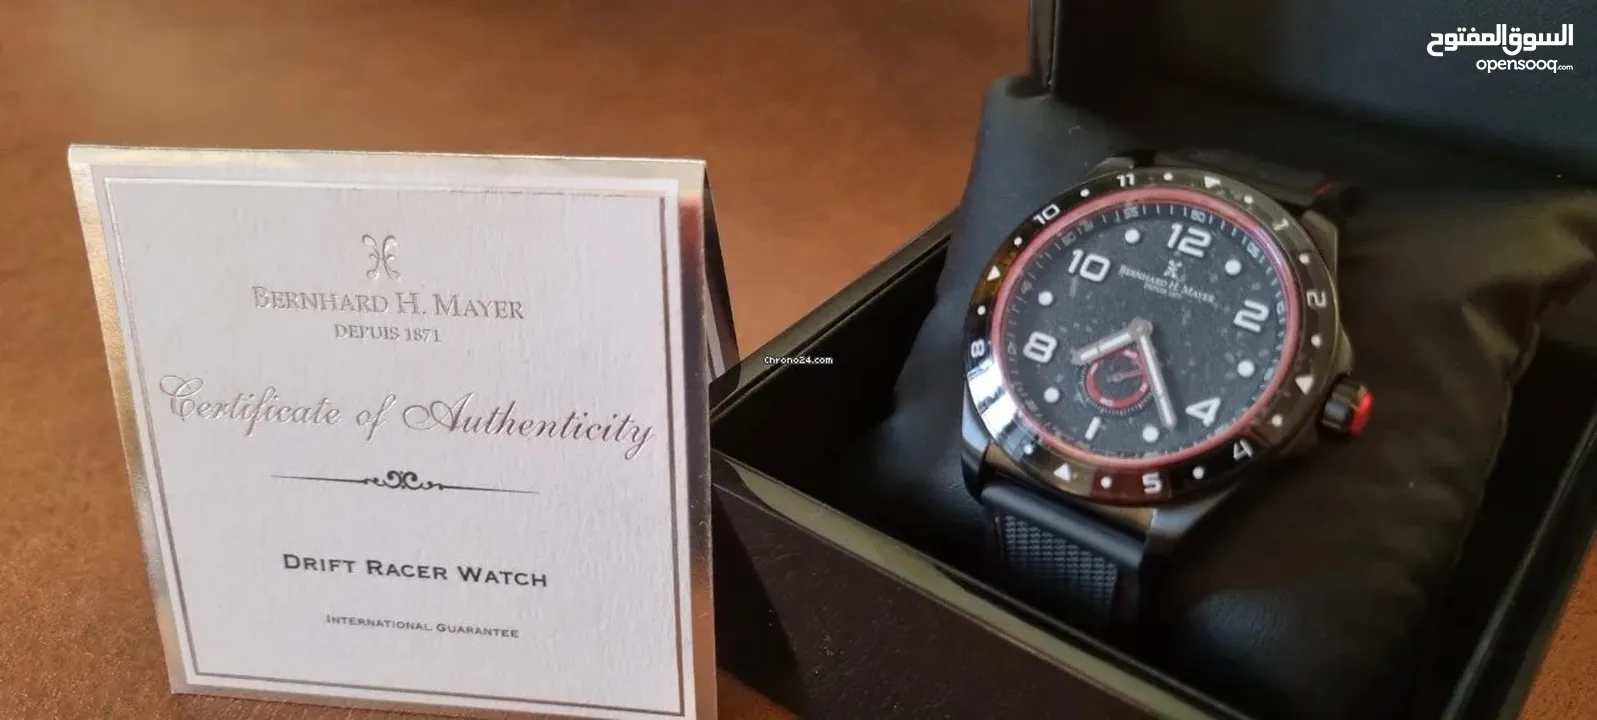 ساعة أصلية (ماركة عالمية) drift racer watch bernhard h mayer depuis 1871 (جديدة) - البيع مستعجل